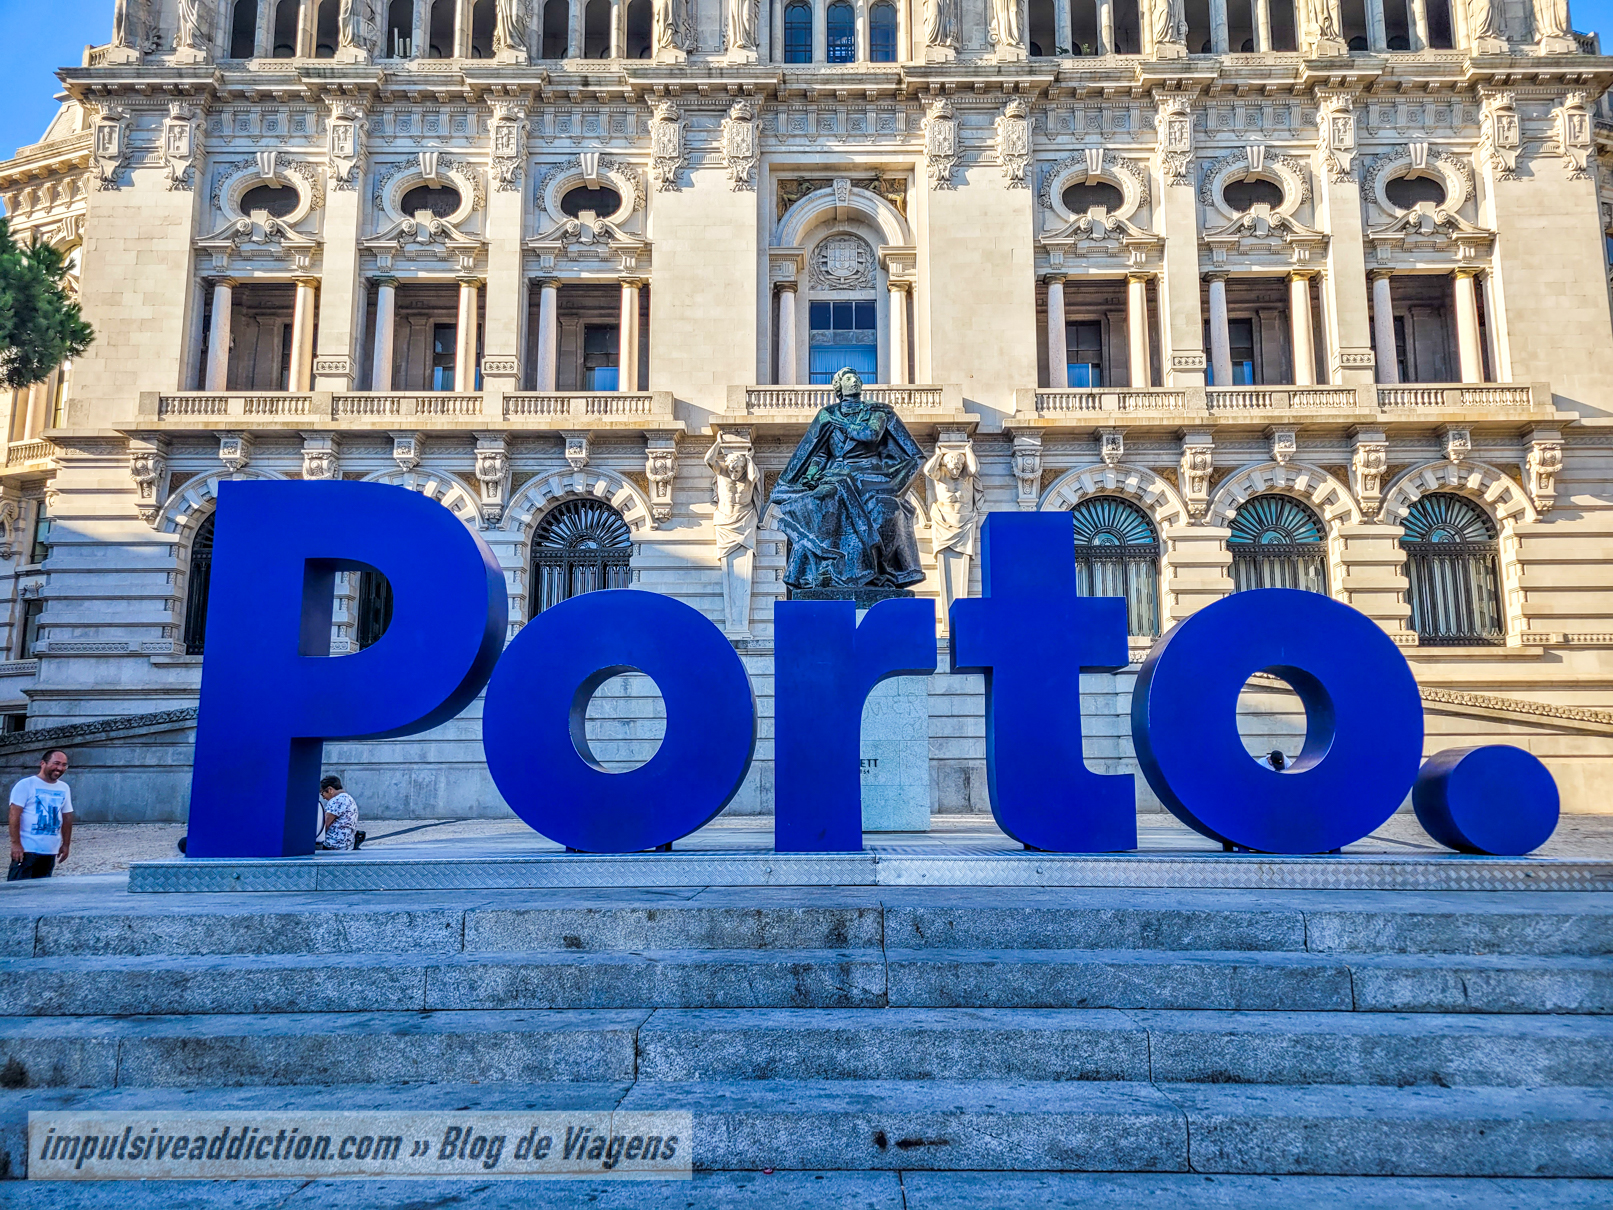 Letras "Porto" na Avenida dos Aliados